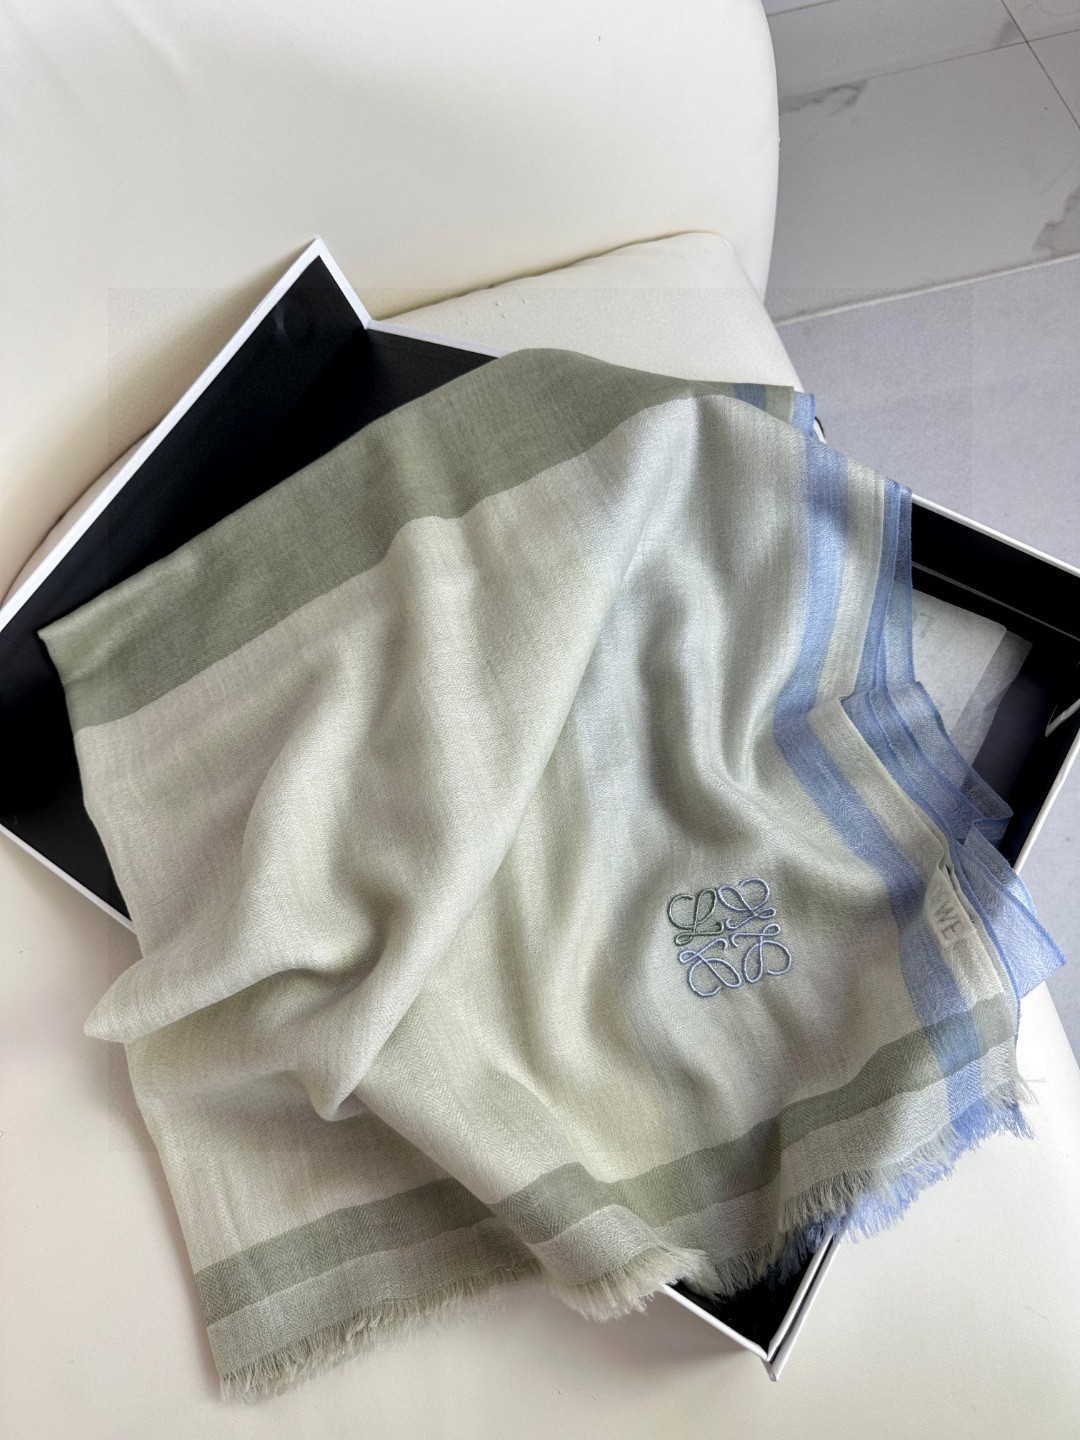 罗意威LW轻盈格纹长巾很幸运拿到這个品牌的东西真的不多见很少在国內做订单款式真的少的可怜️️️罗意威作为